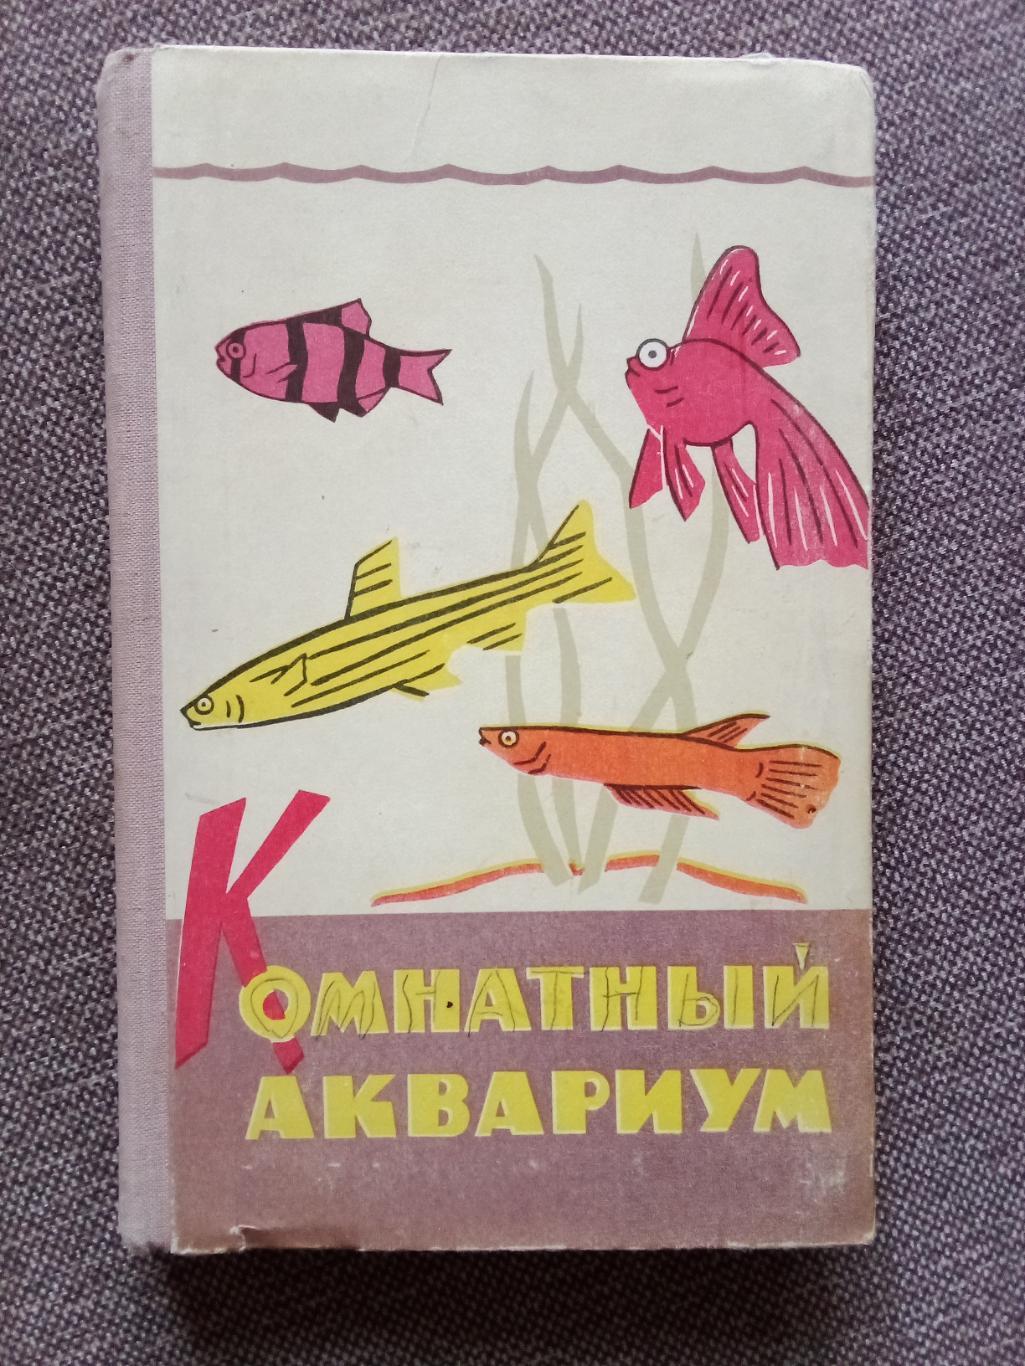 Комнатный аквариум 1965 г. (Аквариумные рыбки - разведение и содержание)